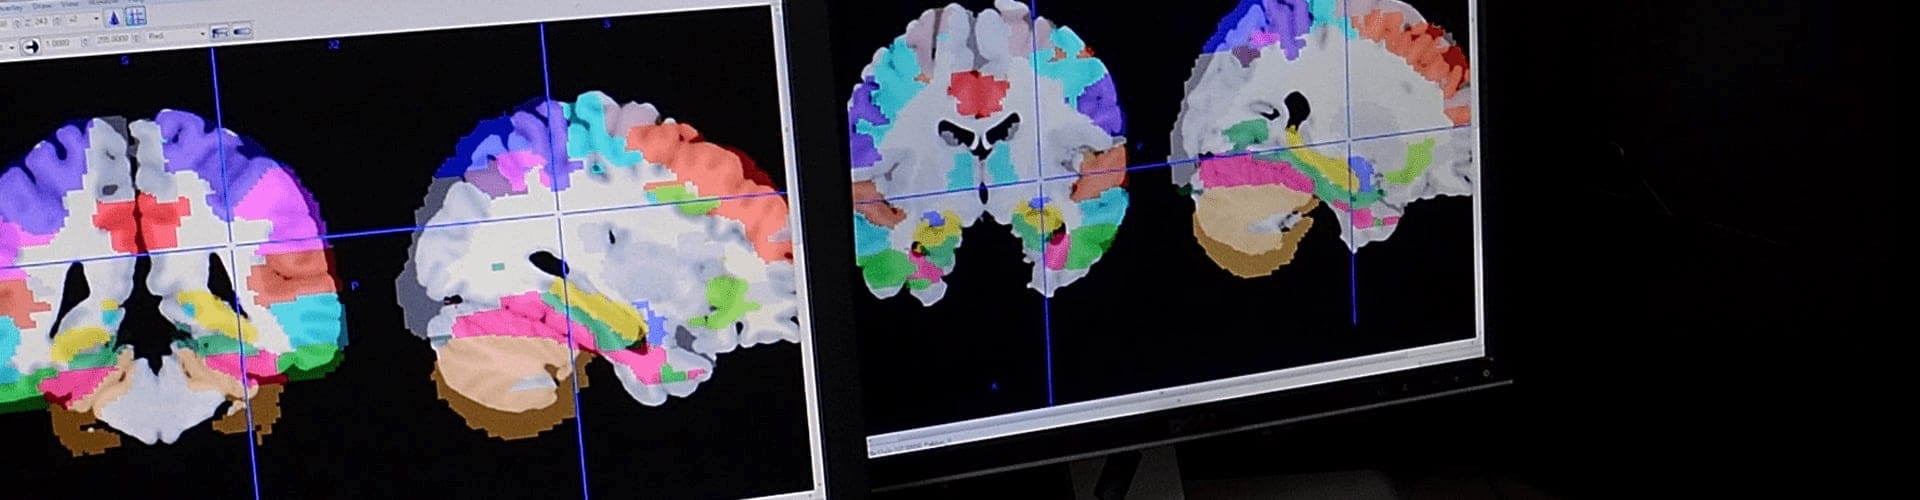 Digital scans of a brain